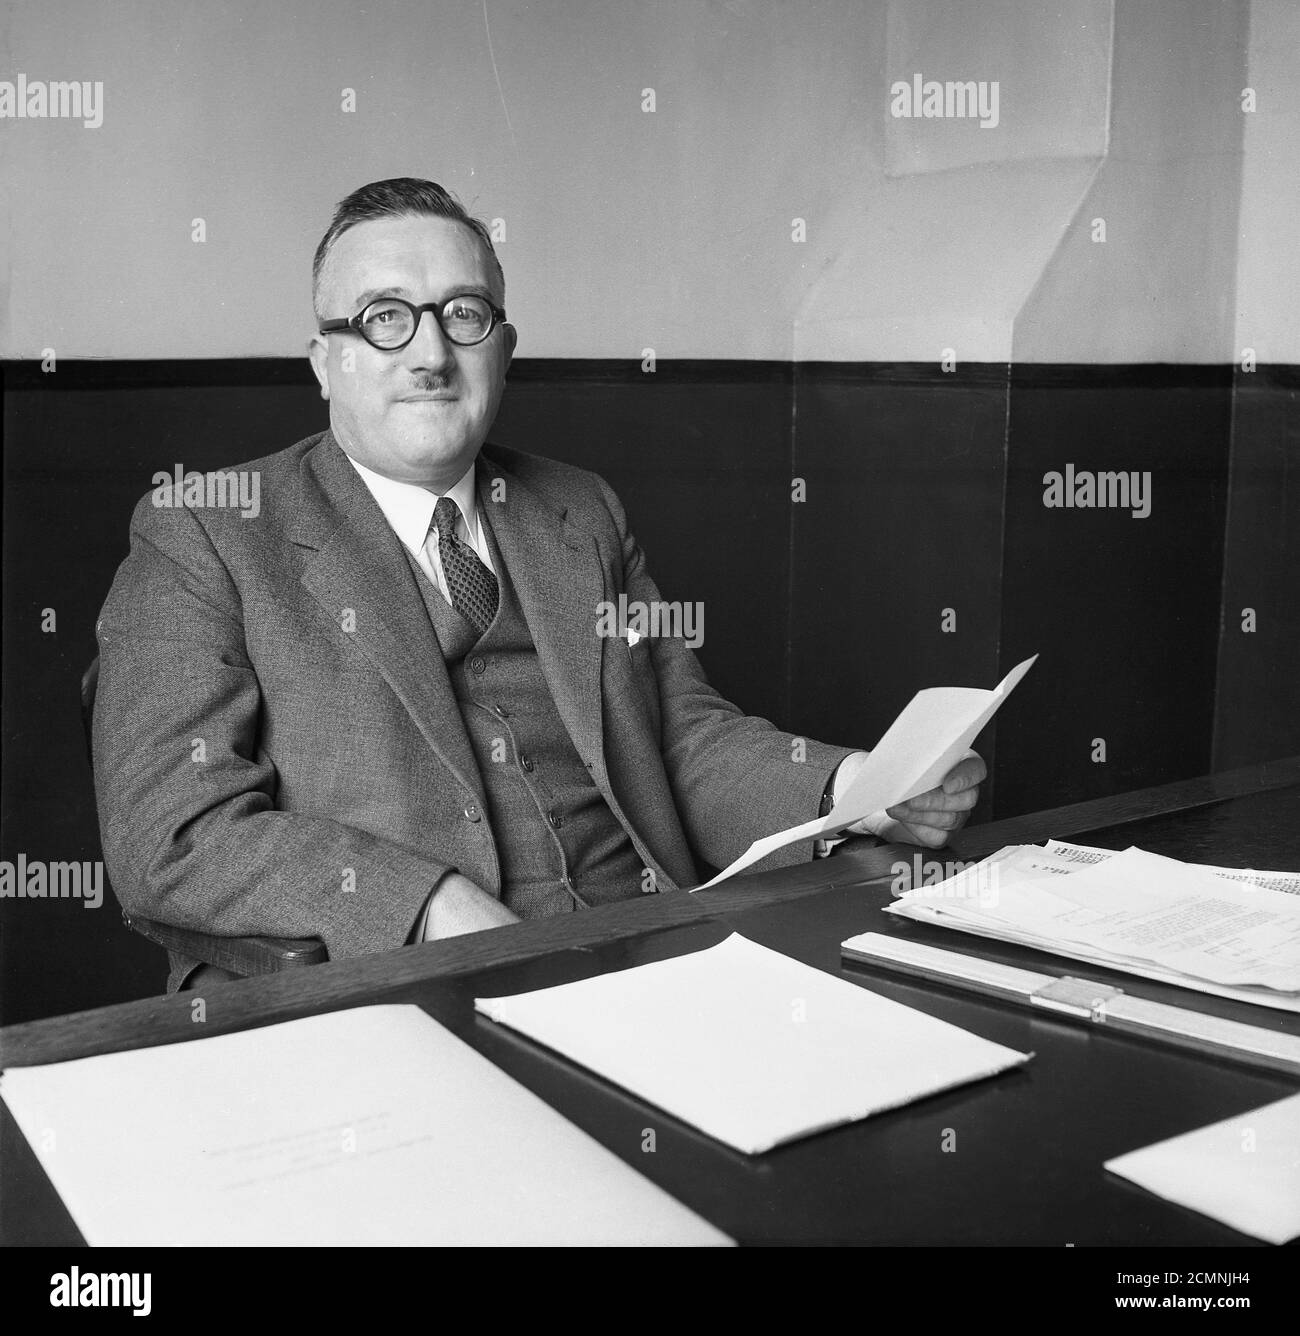 1950er Jahre, historisches Porträt eines leitenden Geschäftsleiters der British Ever Ready Battery & Electrical Company, eines der führenden britischen Produktionsunternehmen dieser Zeit, an seinem Schreibtisch in seinem spartanischen Büro in England, Großbritannien, sitzend. Stockfoto